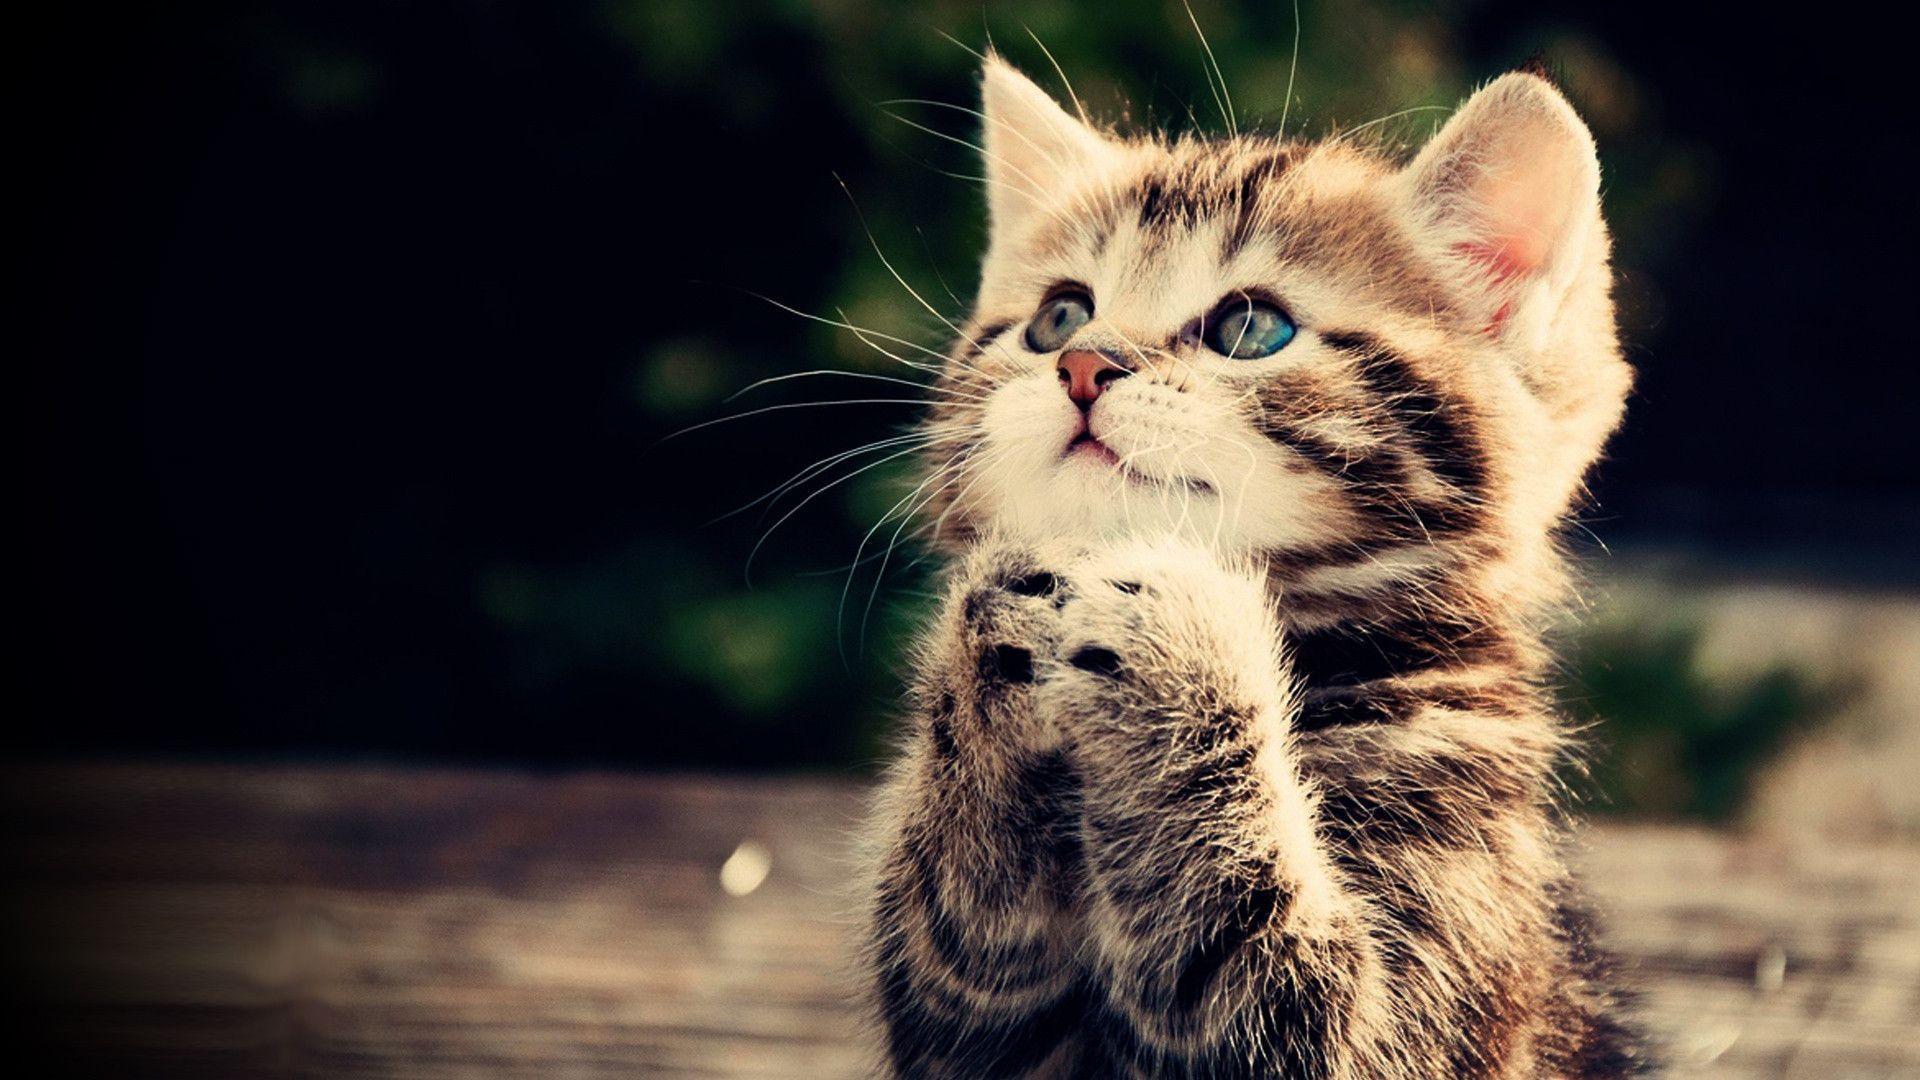 Cute Kitten Praying Wallpaper. New Wallpaper HD